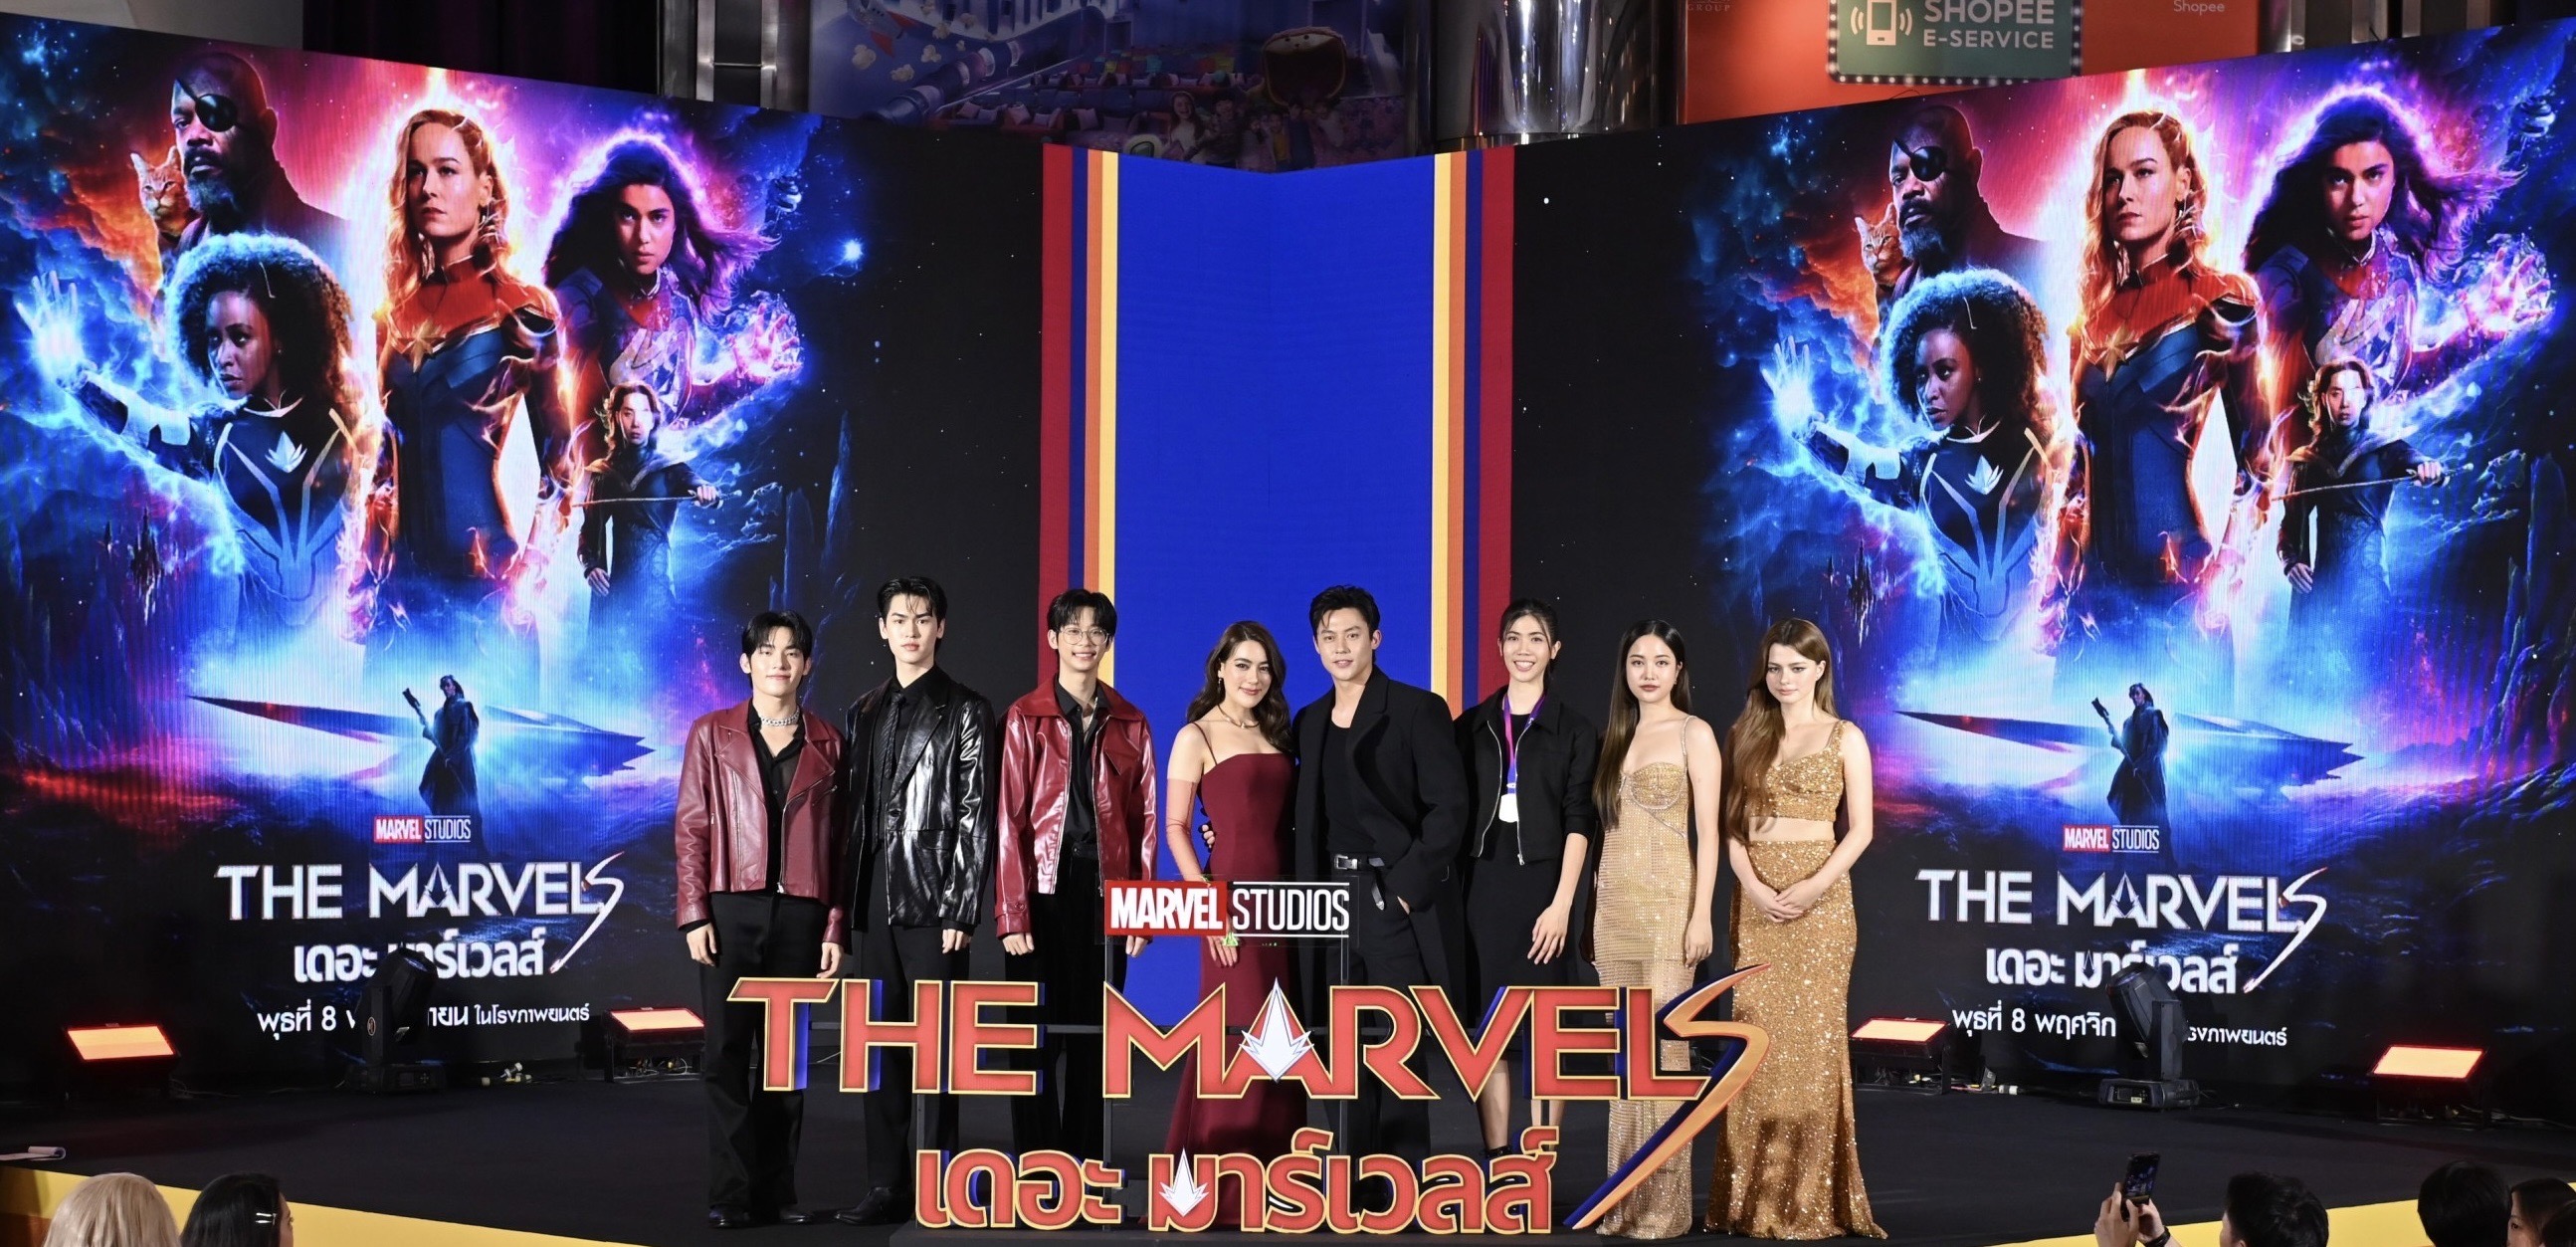 “คิมเบอร์ลี่” ควง “หมาก ปริญ” ร่วมปกป้องจักวาลใน “Marvel Studios’ The Marvels เดอะ มาร์เวลส์” 8 พฤศจิกายนนี้ ในโรงภาพยนตร์ 